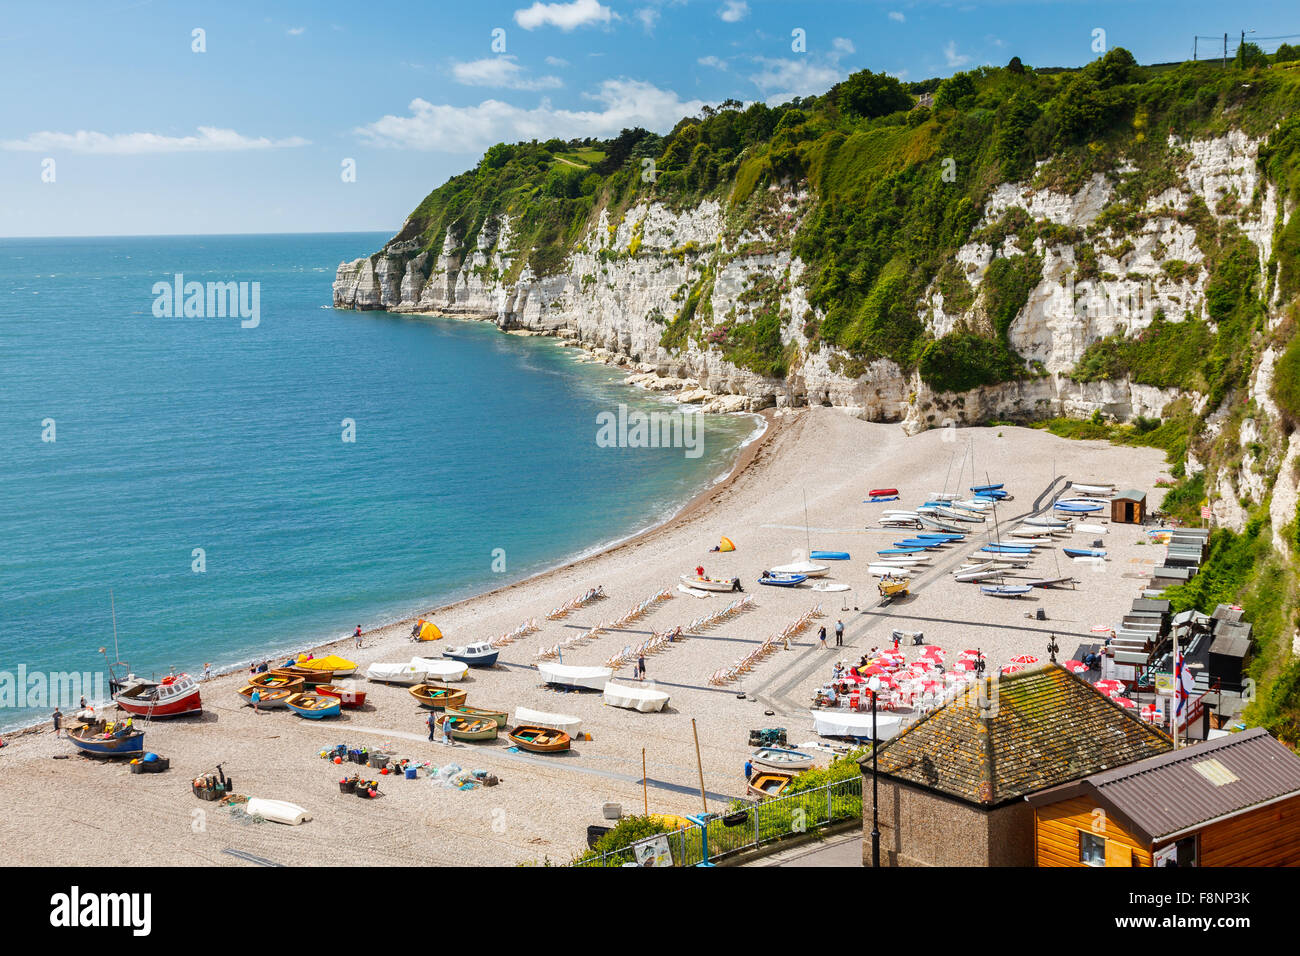 Donnant sur la plage et falaises de la bière dans la baie de Lyme Devon, Angleterre Angleterre Europe Banque D'Images